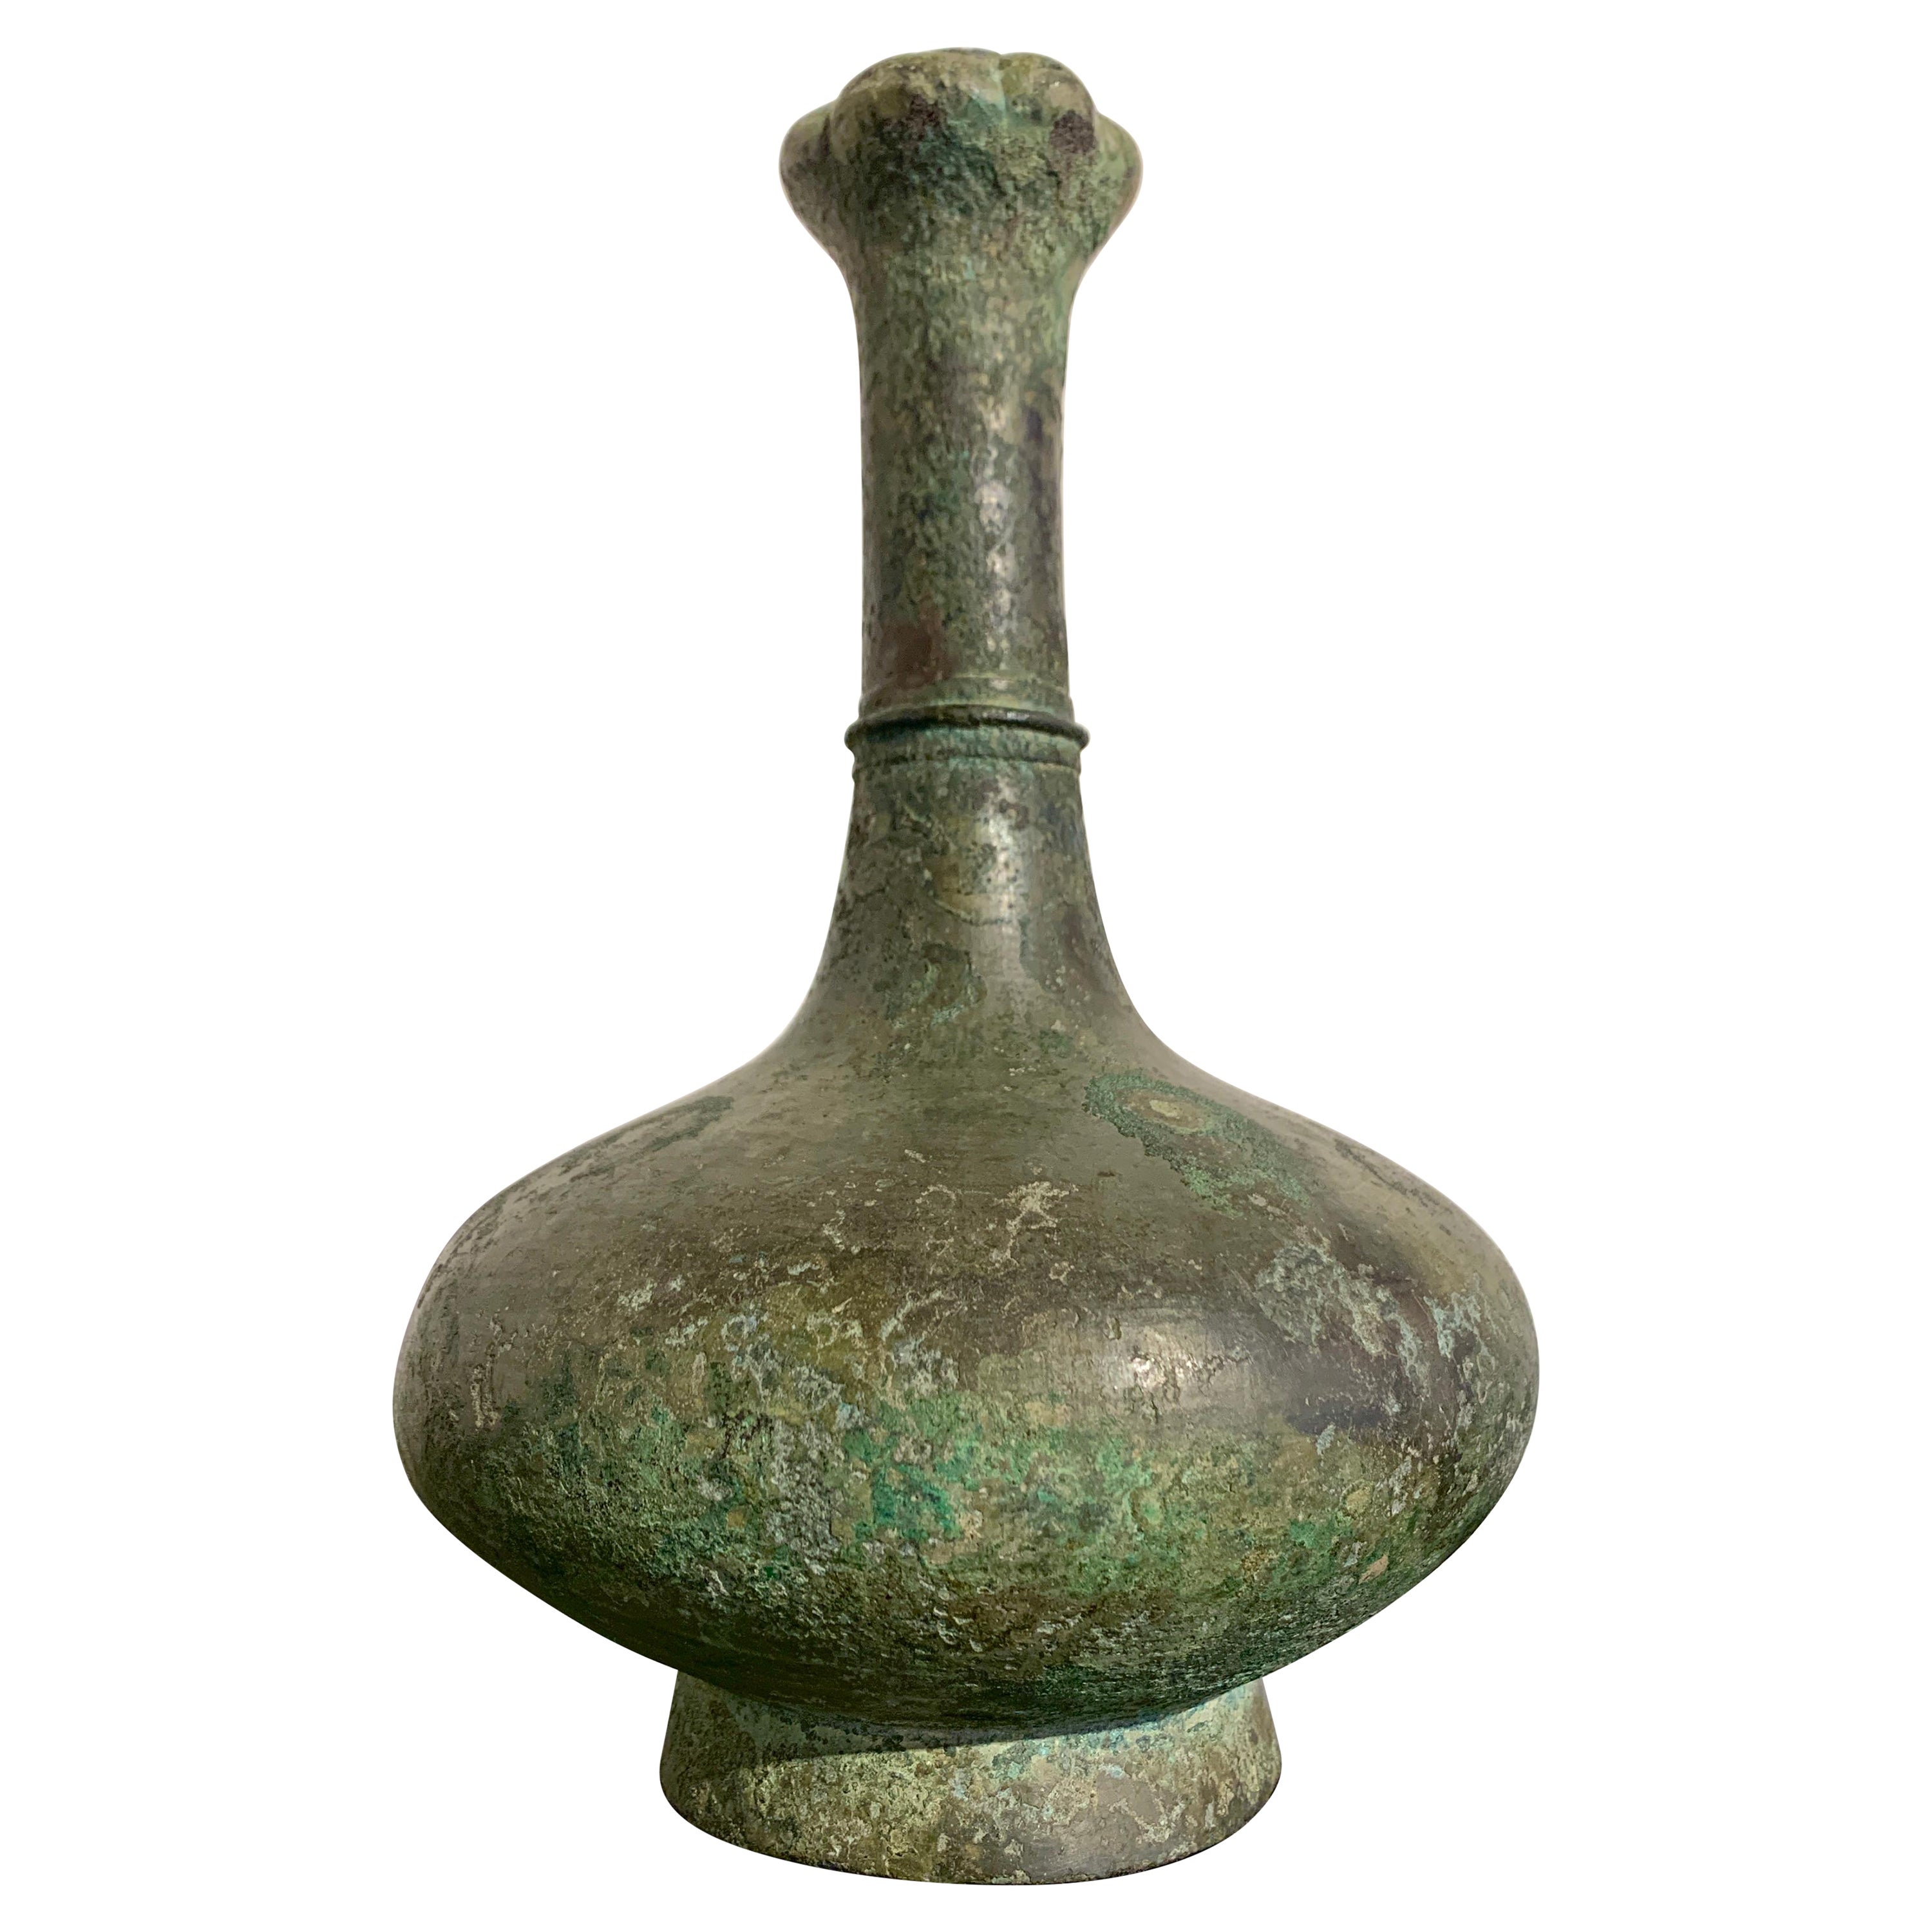 Chinesische Bronze-Vase mit griechischem Kopf aus der westlichen Han-Dynastie, 206 v. Chr. - 25 n. Chr.